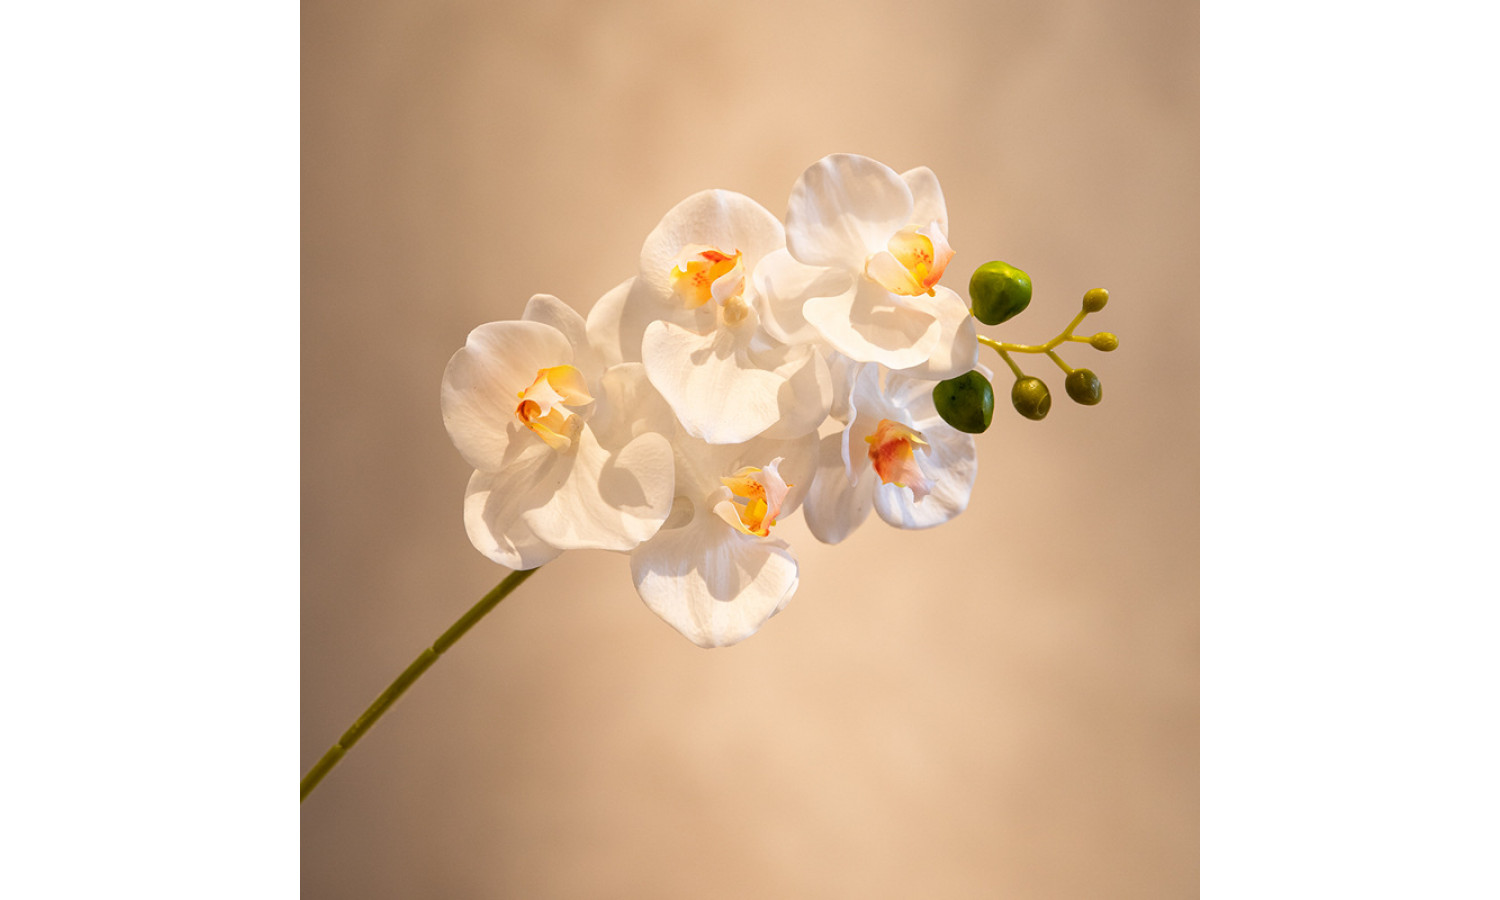 Ветка орхидеи, IST-038, 45 см, белый